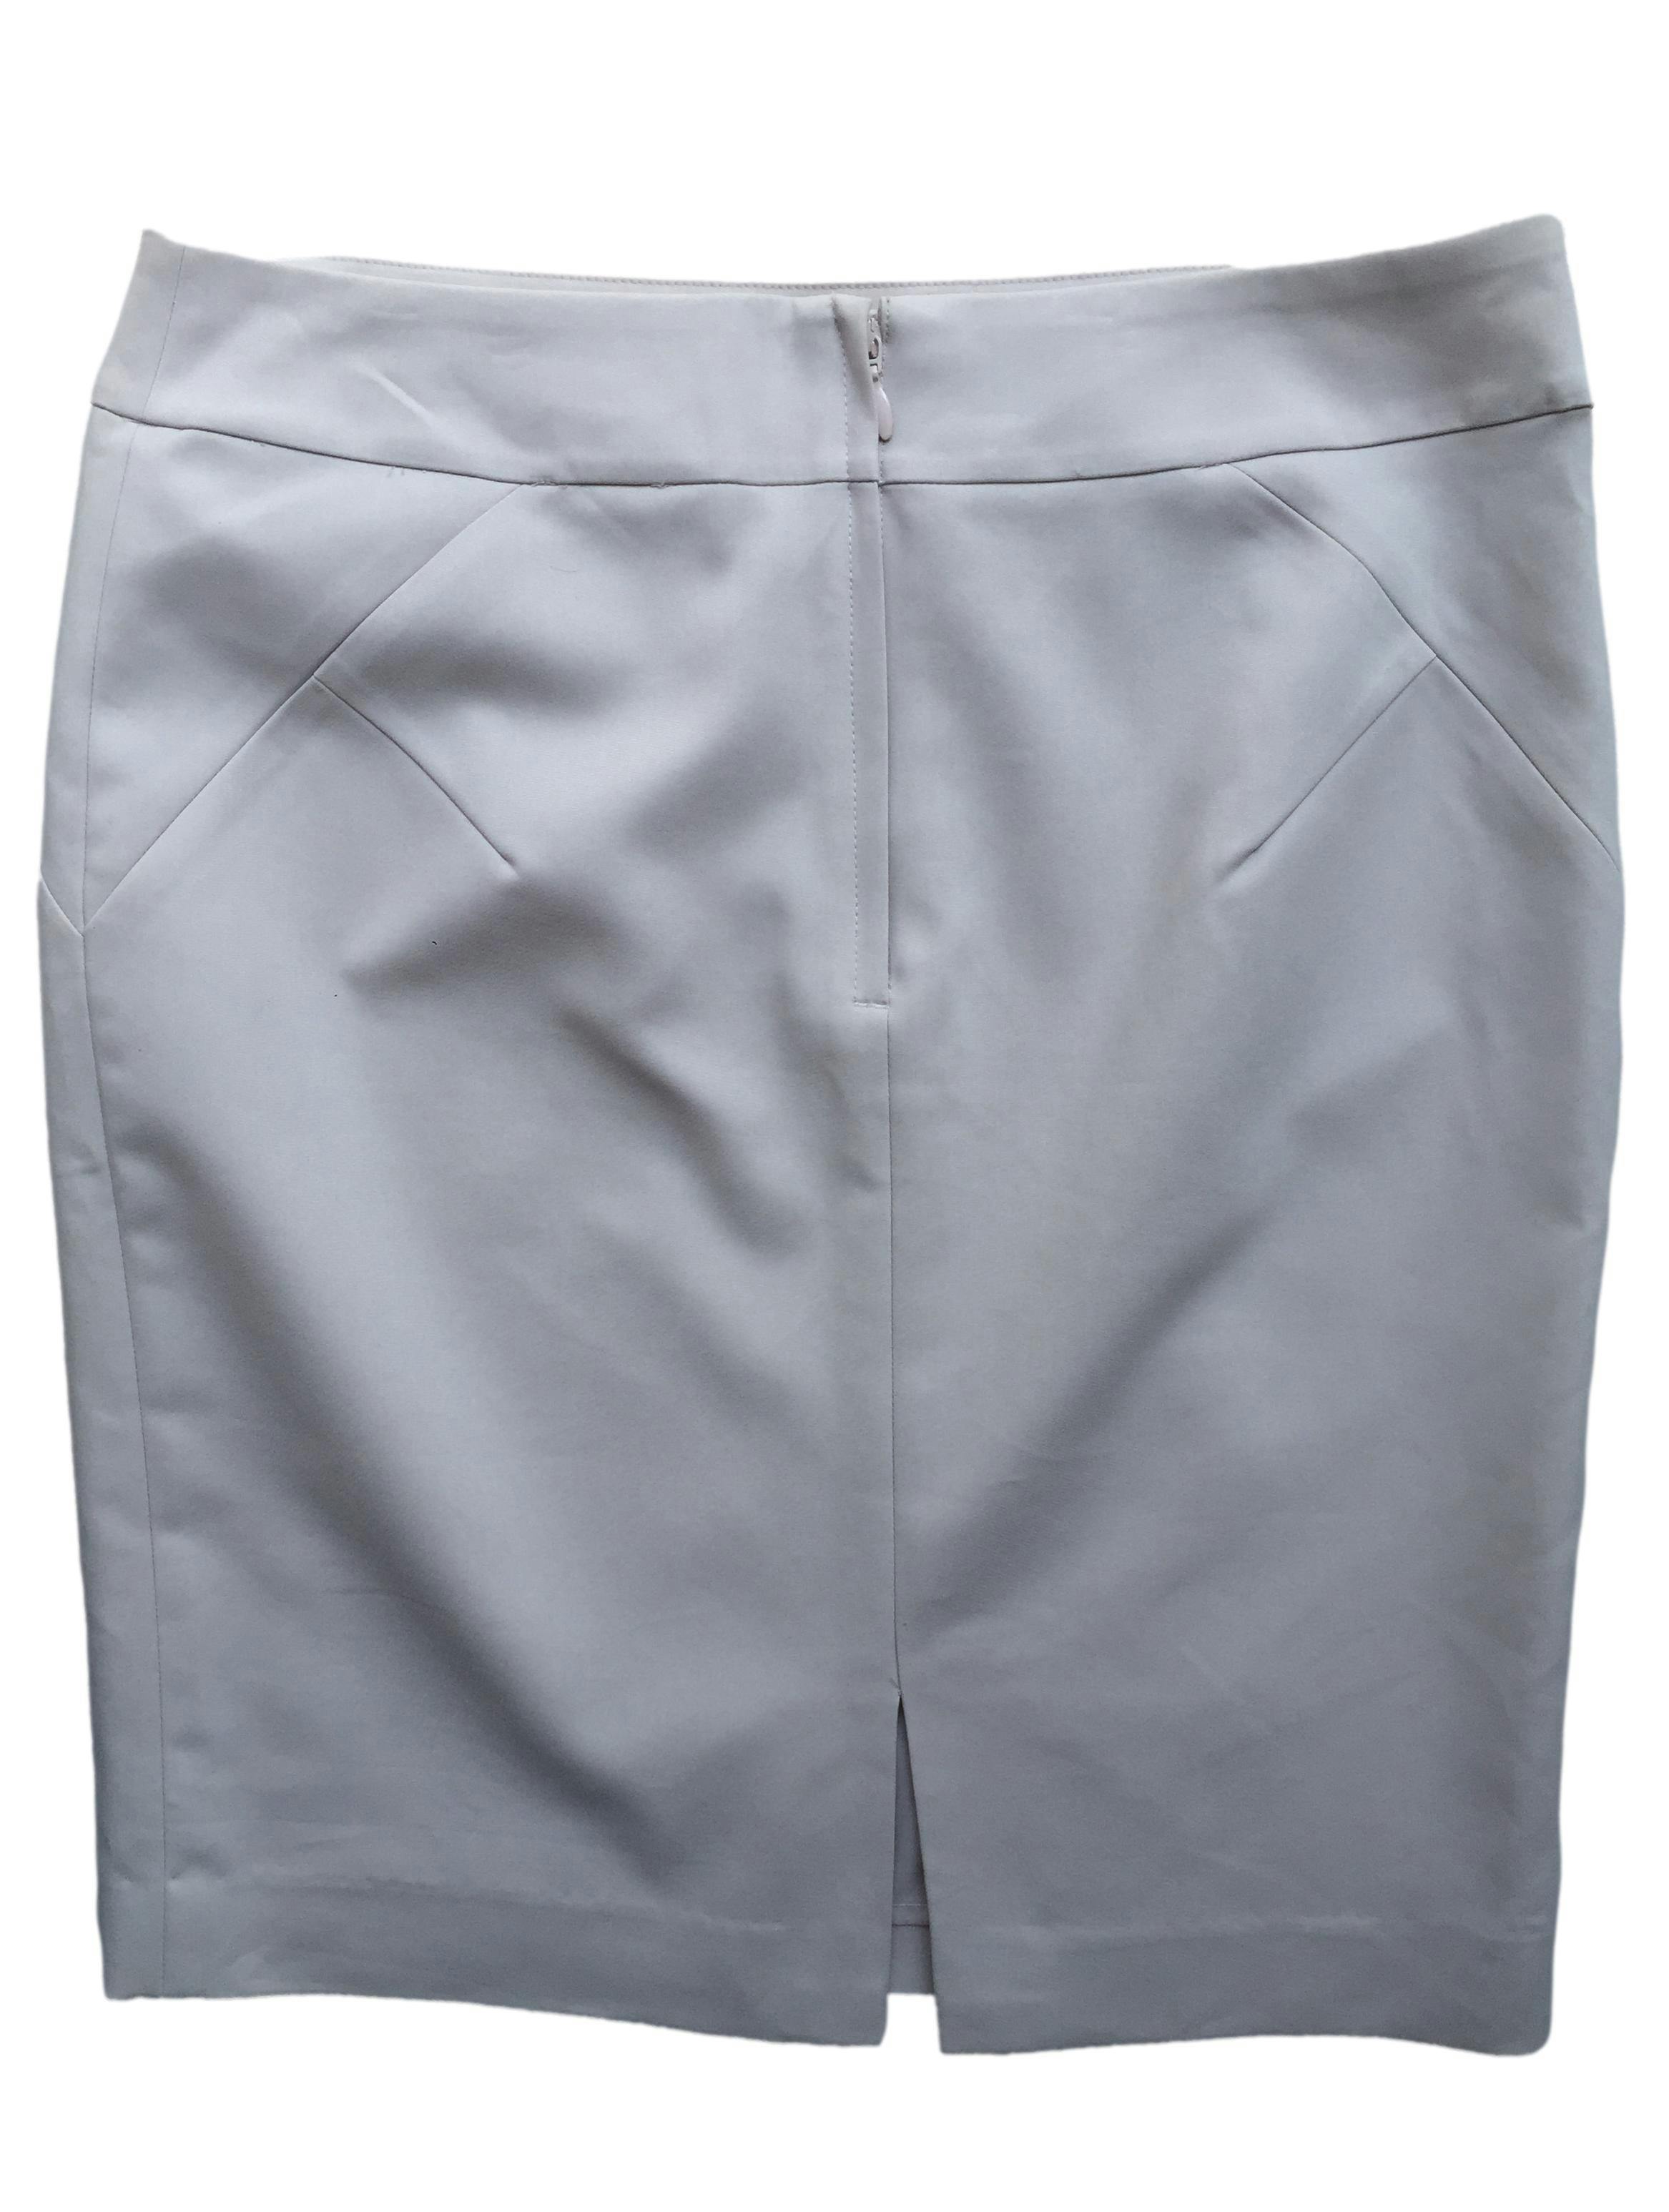 Falda crema H&M, corte recto, cierre invisible. Cintura 84cm, Largo 54cm